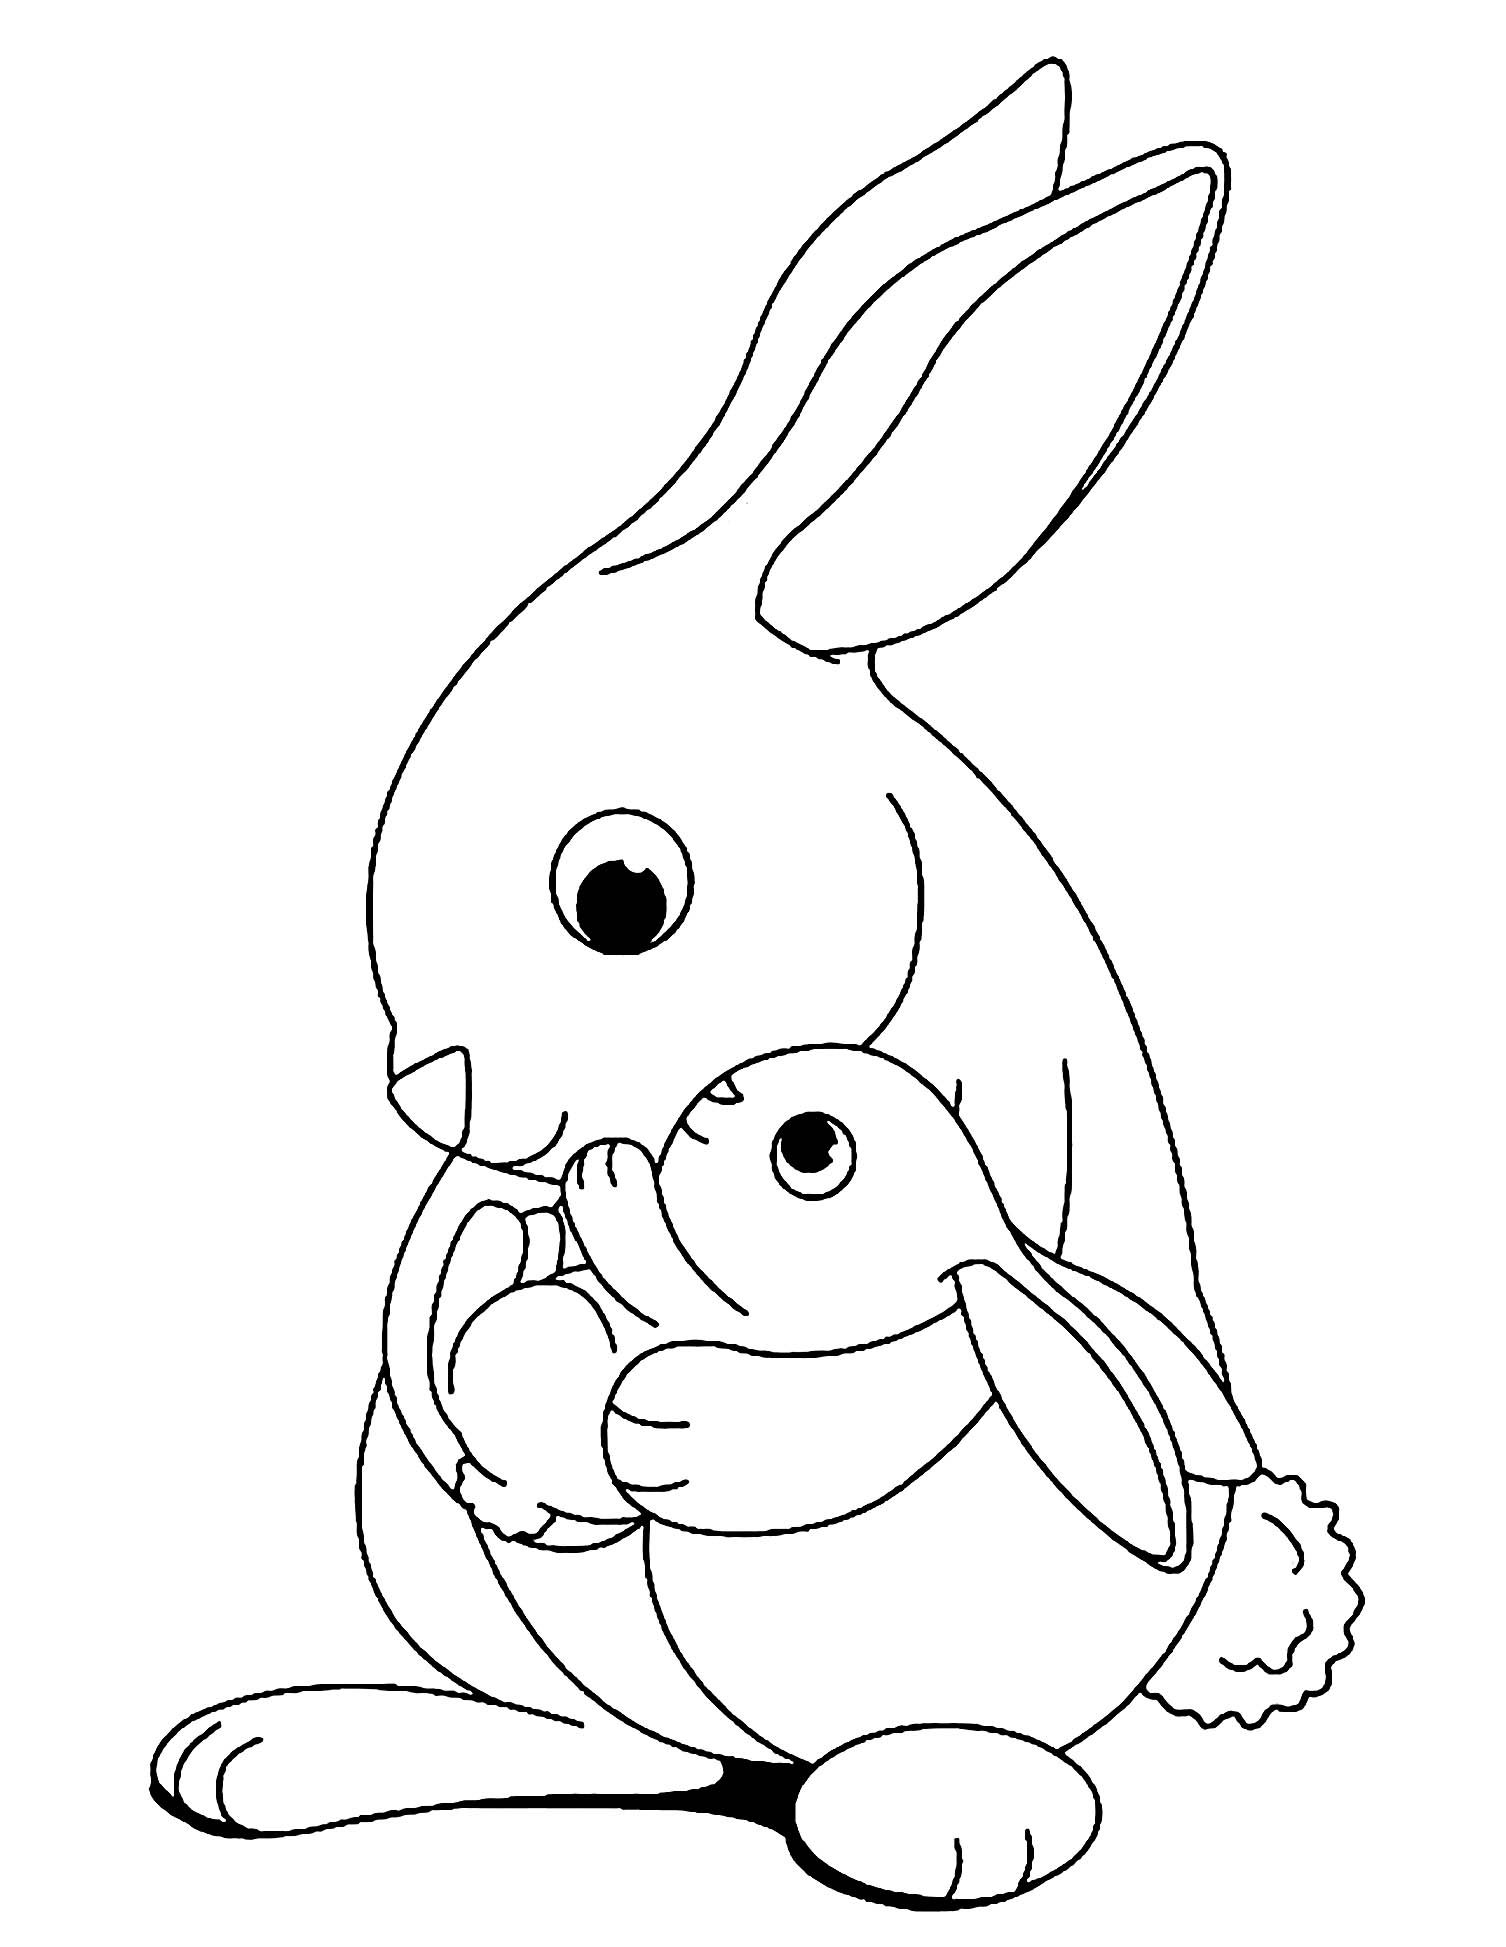 Bức tranh tô màu thỏ dành cho bé